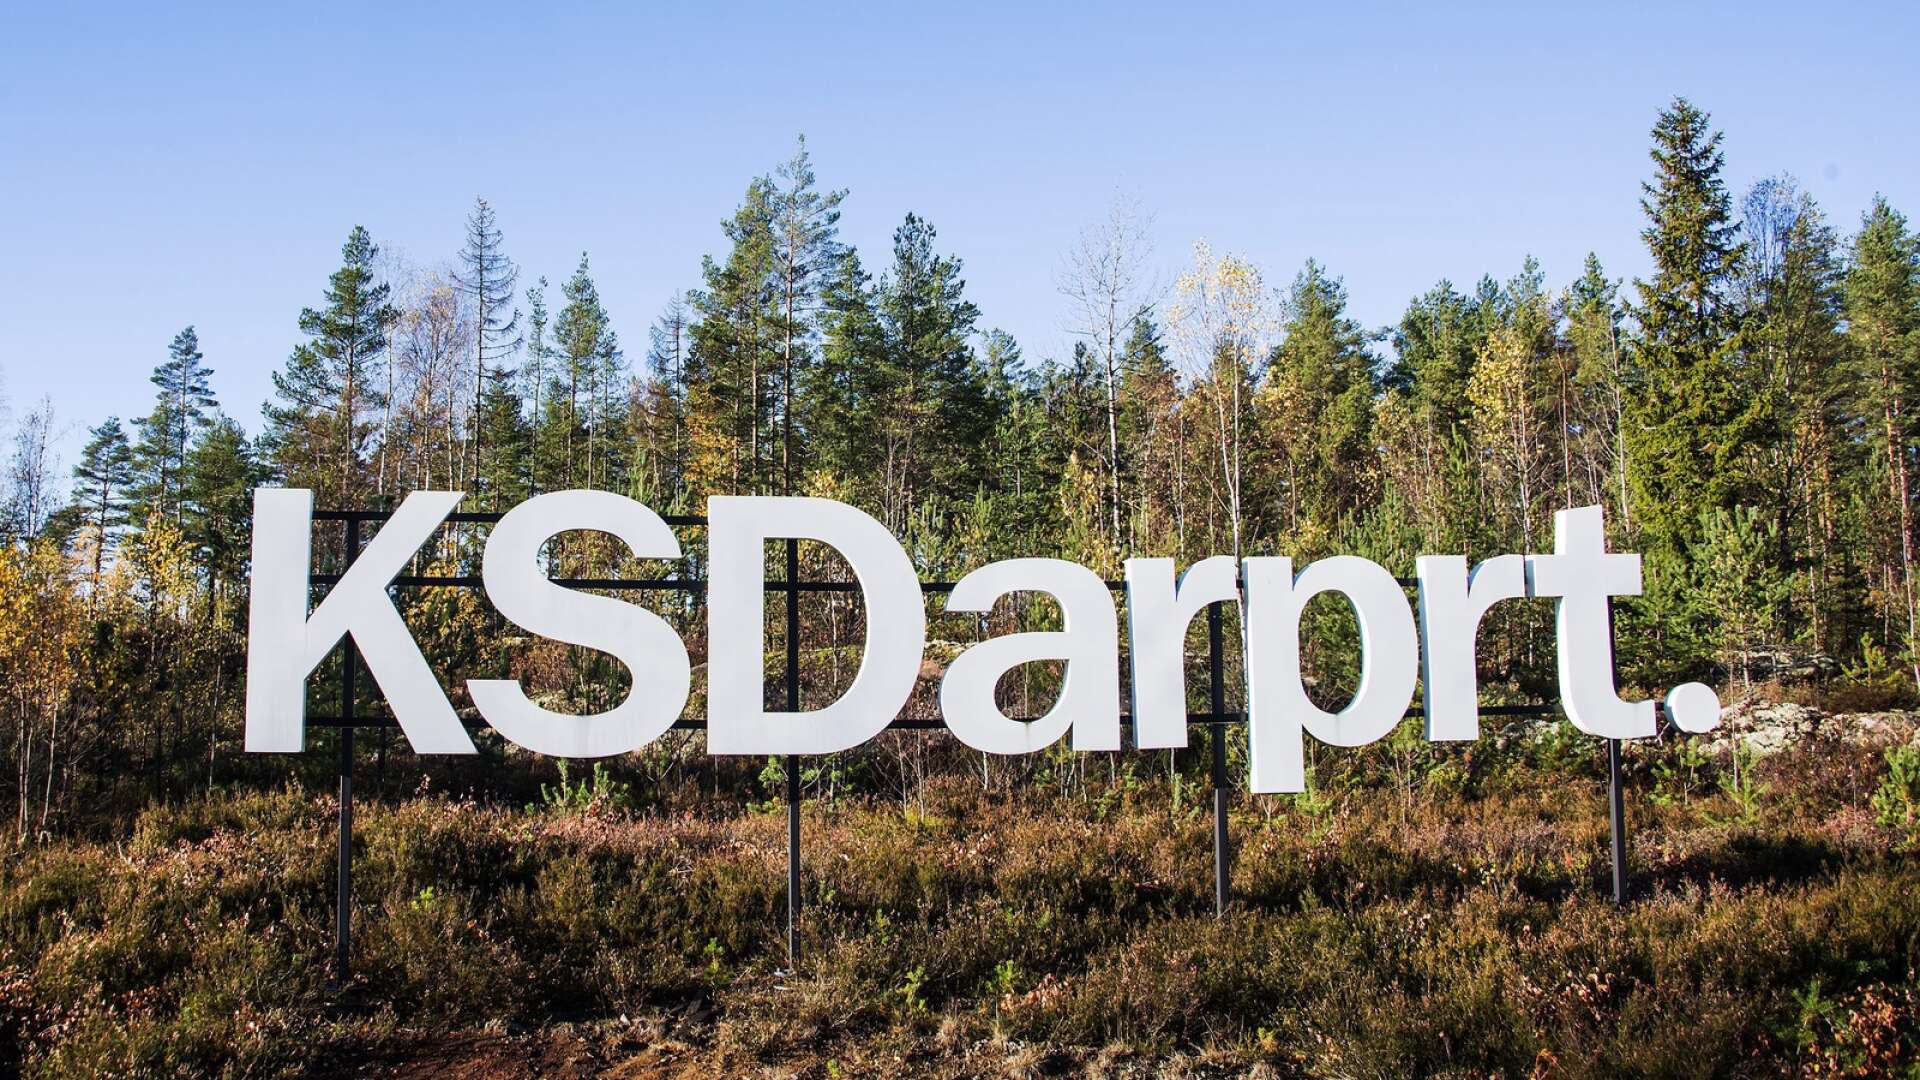 KSD airport är en regional flygplats som kämpar och detta samtidigt som det statliga Swedavia, som bland annat äger Arlanda, drar in mångmiljonvinster årligen, skriver Sara Gunnarsson.